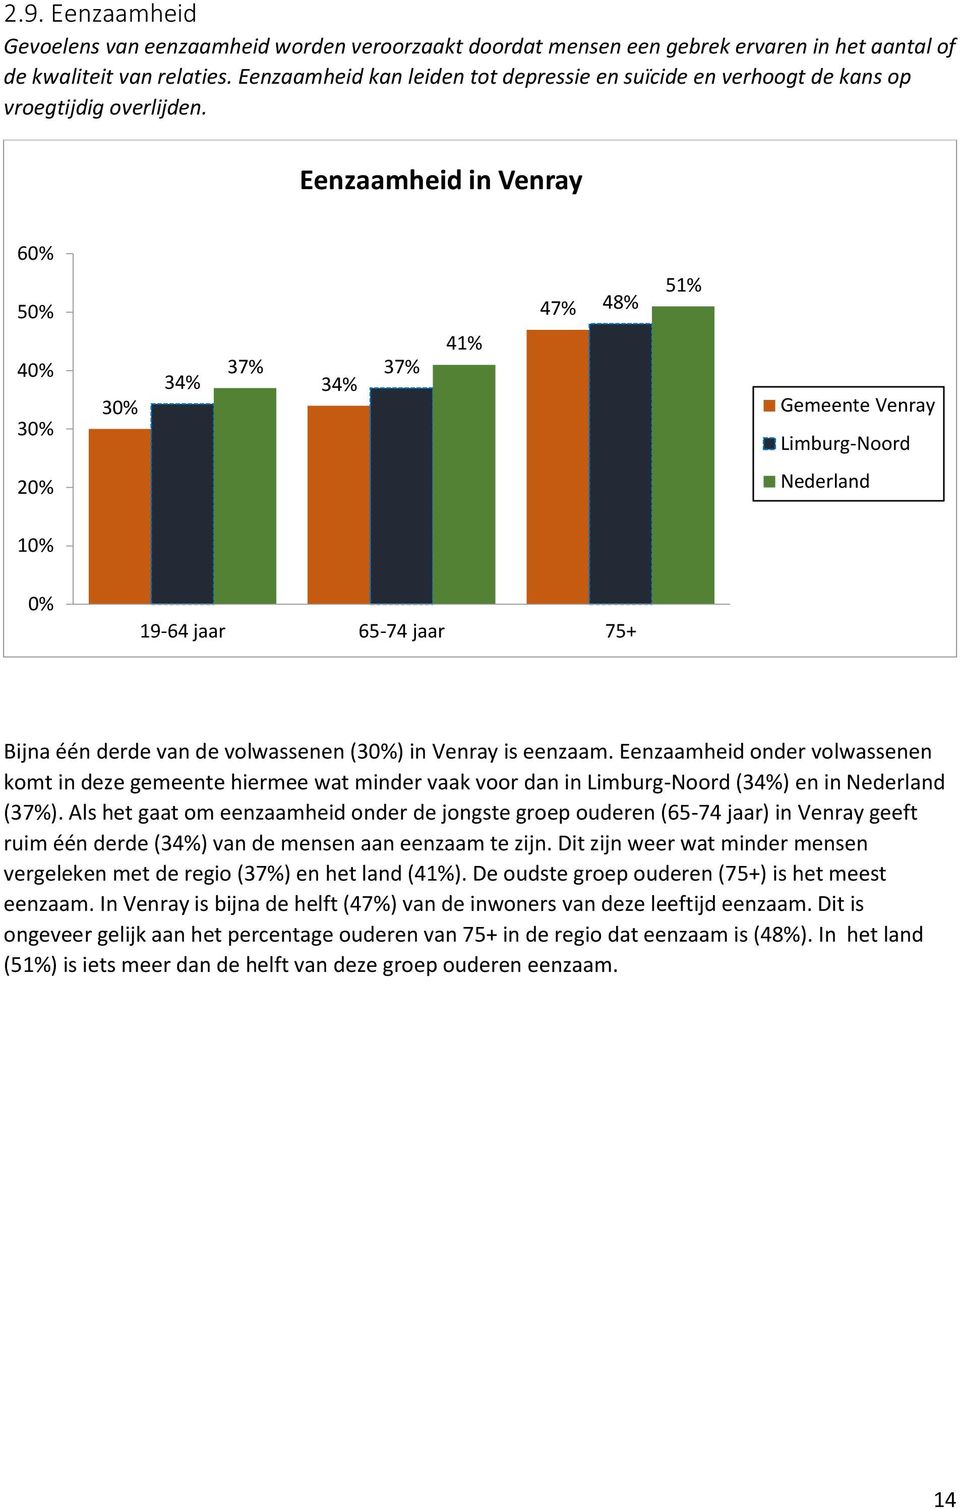 Eenzaamheid in Venray 60% 50% 40% 30% 30% 34% 37% 34% 37% 41% 47% 48% 51% Gemeente Venray Limburg-Noord Nederland 0% 19-64 jaar 65-74 jaar 75+ Bijna één derde van de volwassenen (30%) in Venray is